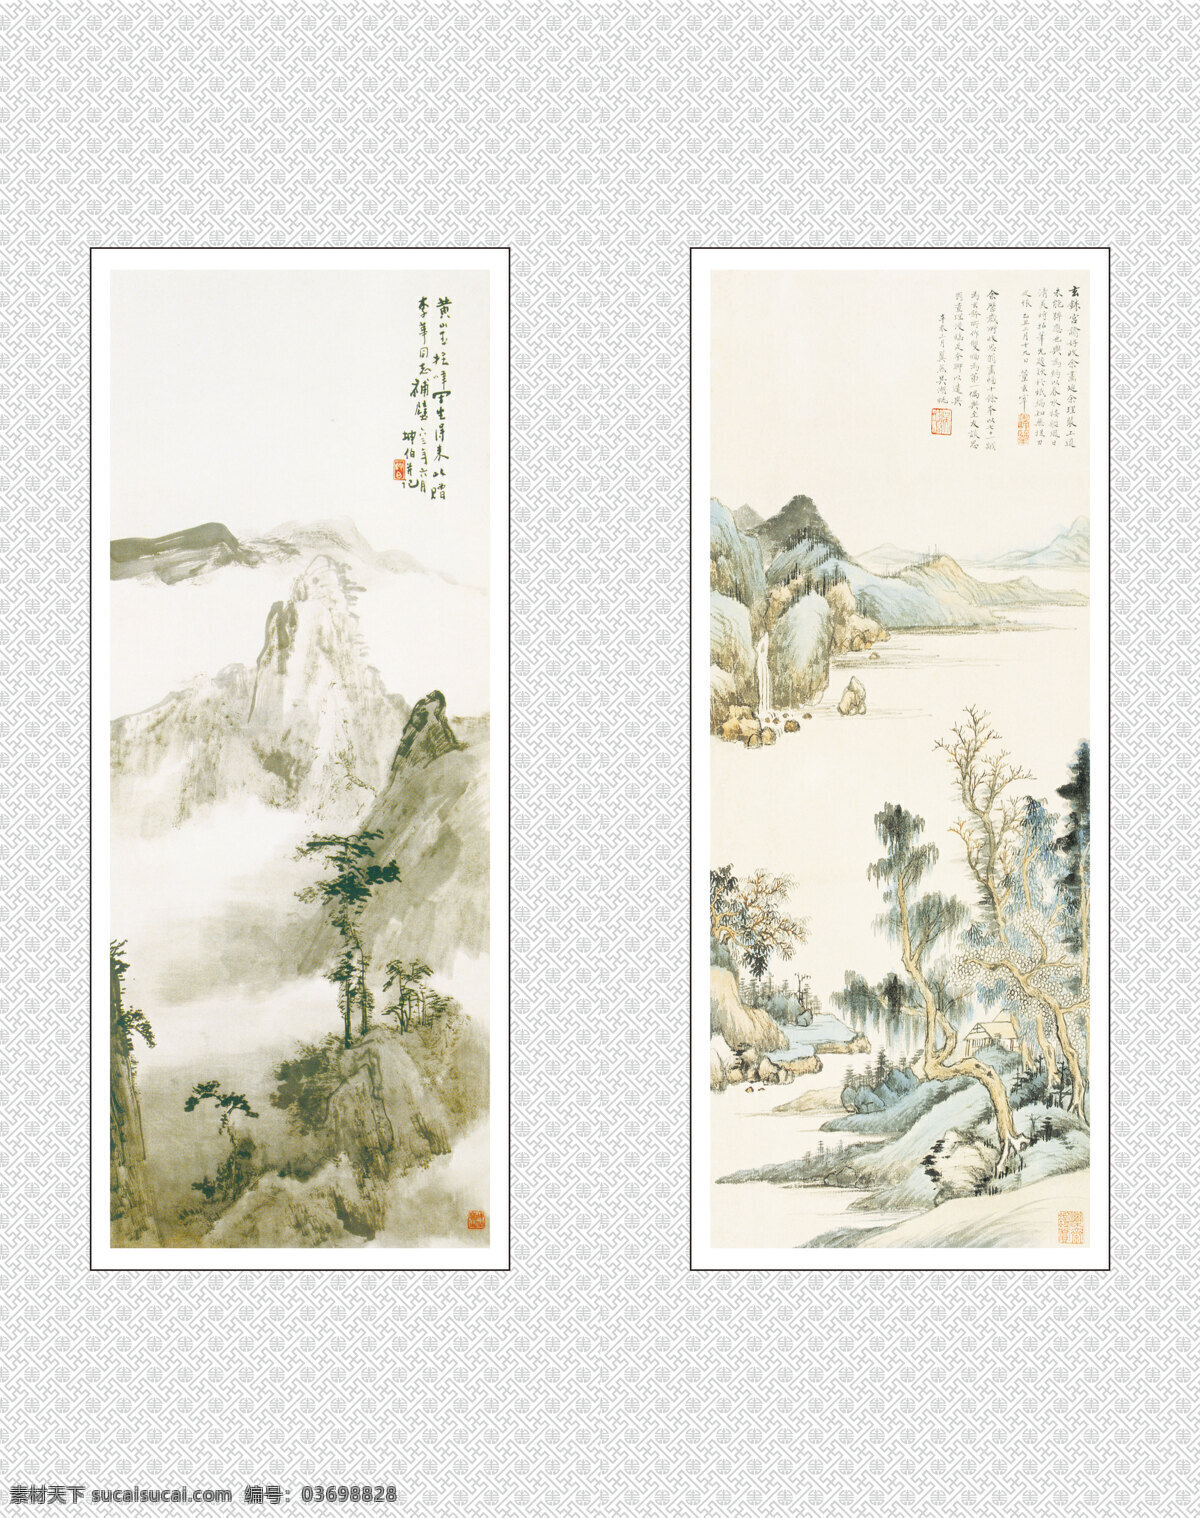 中国画 中国元素 绘画元素 书法 艺术 山水画 水墨画 中国风 淡彩画 移门图 绘画书法 文化艺术